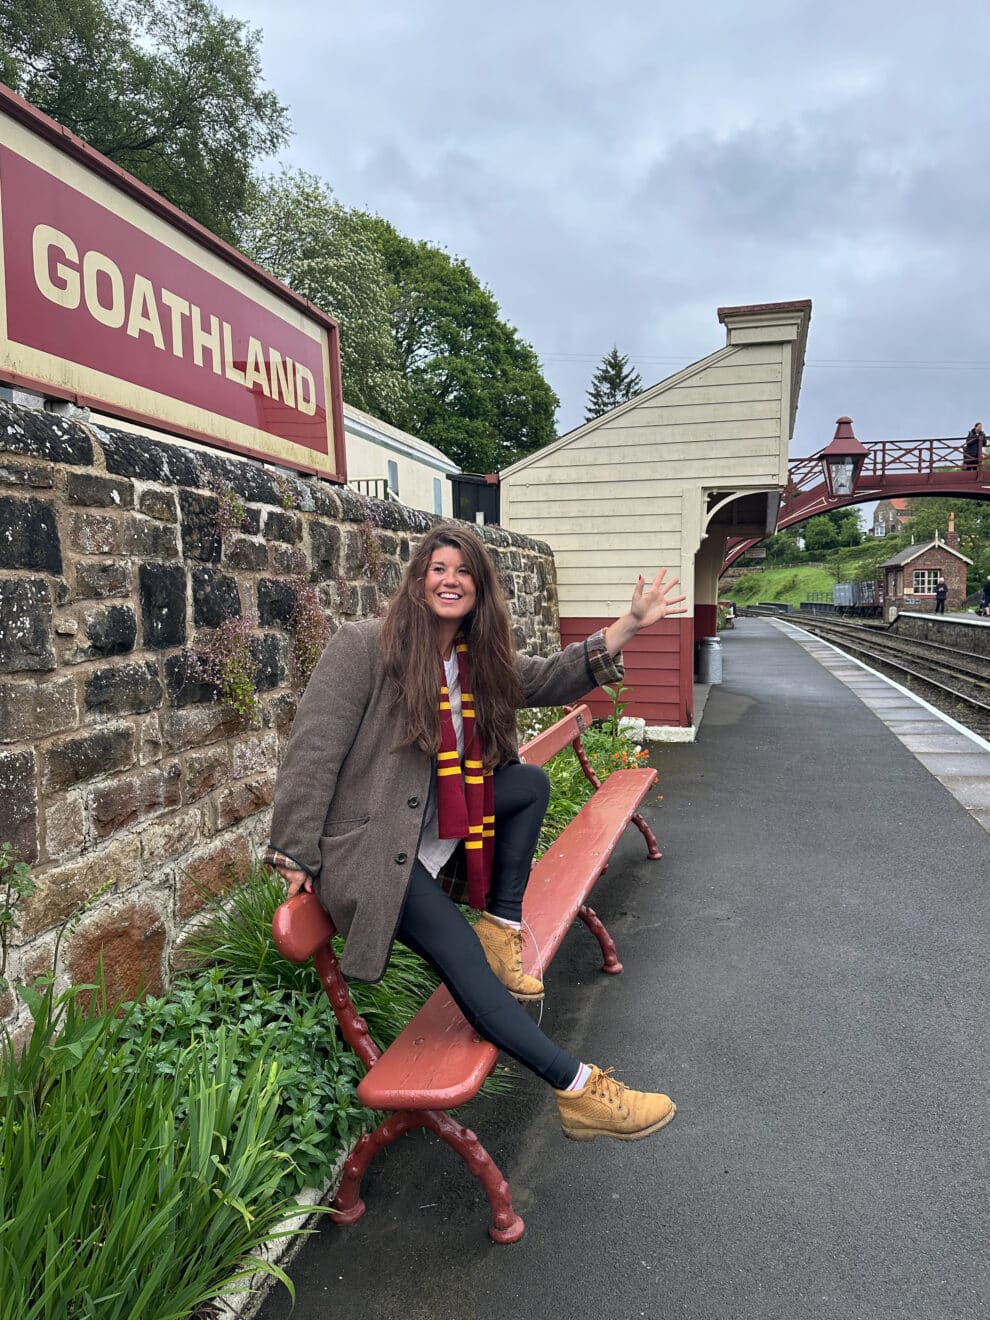 Goathland Station ook wel bekend als Harry Potter Hogsmeade Station bezoeken /  Het station wat te zien is in Philosopher's stone